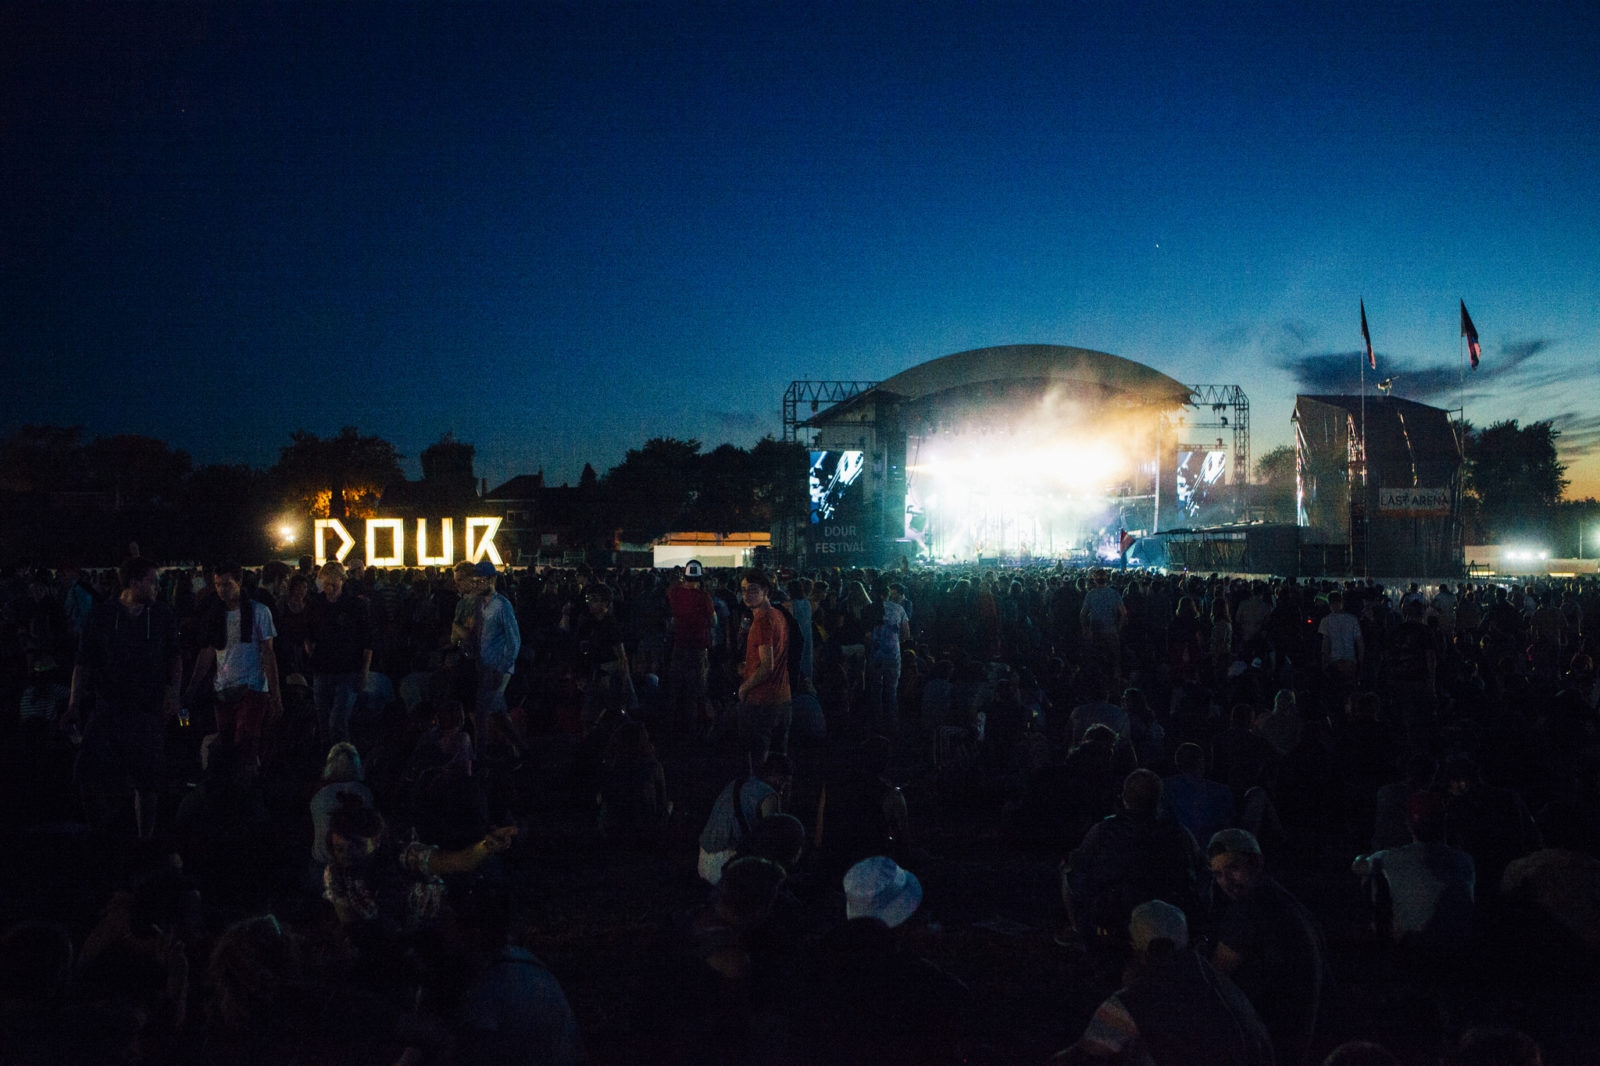 www.dourfestival.eu